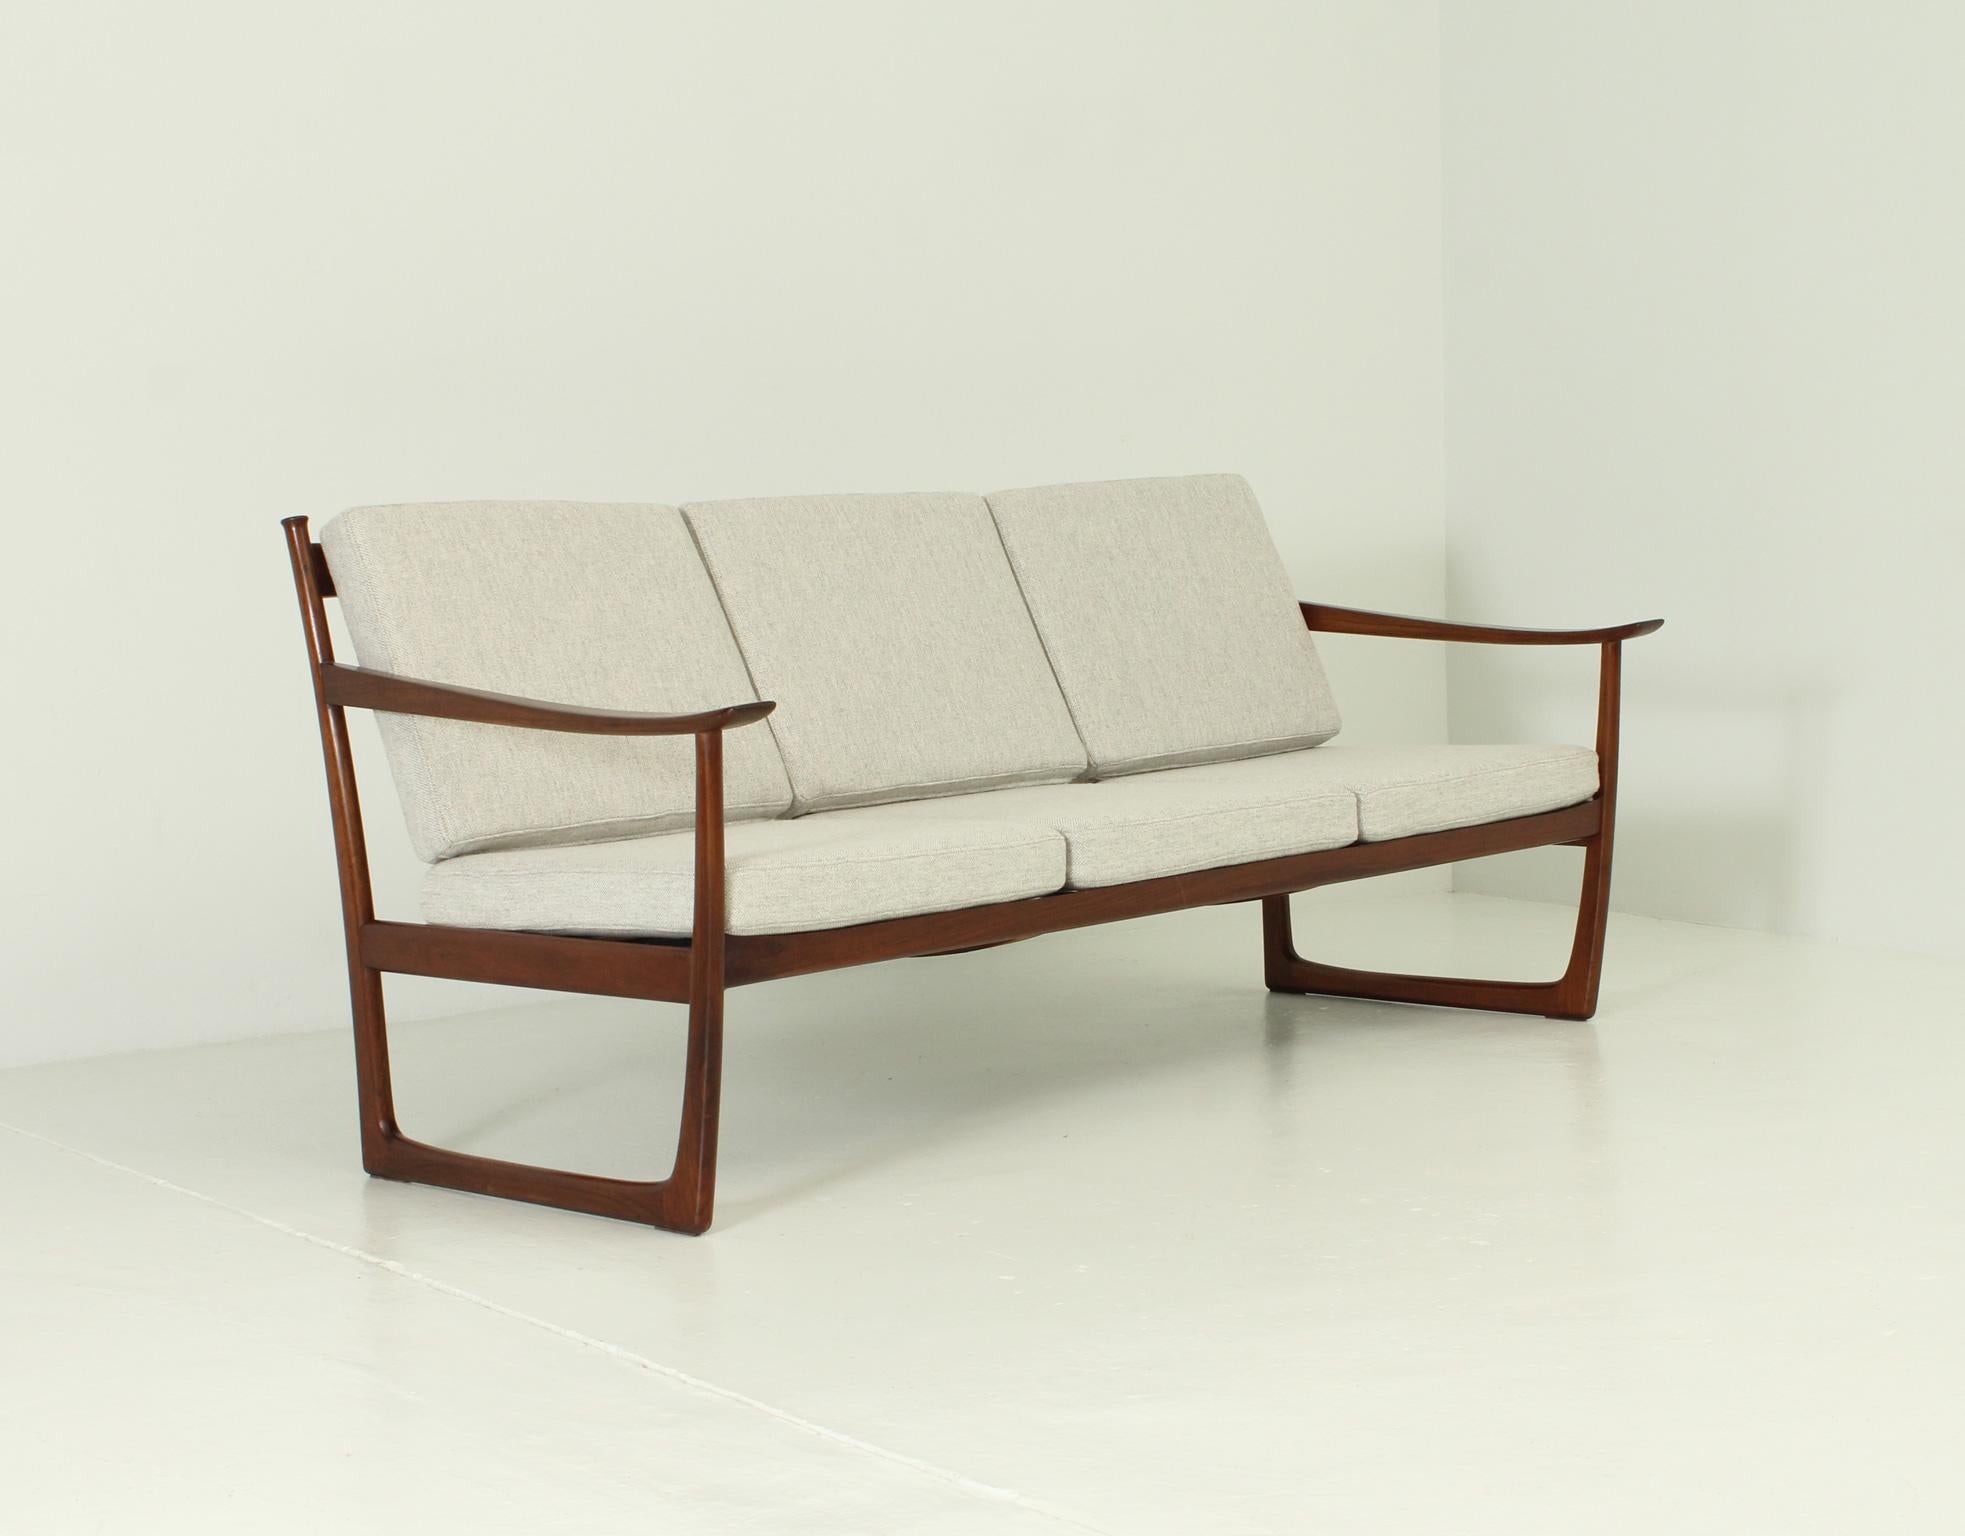 Dreisitziges Sofa Modell FD 130/3, entworfen 1960 von den dänischen Designern Peter Hvidt & Orla Mølgaard-Nielsen für France & Daverkosen, Dänemark. Frühe Ausgabe in Hartholz mit neuer Polsterung in Kvadrat-Stoff.